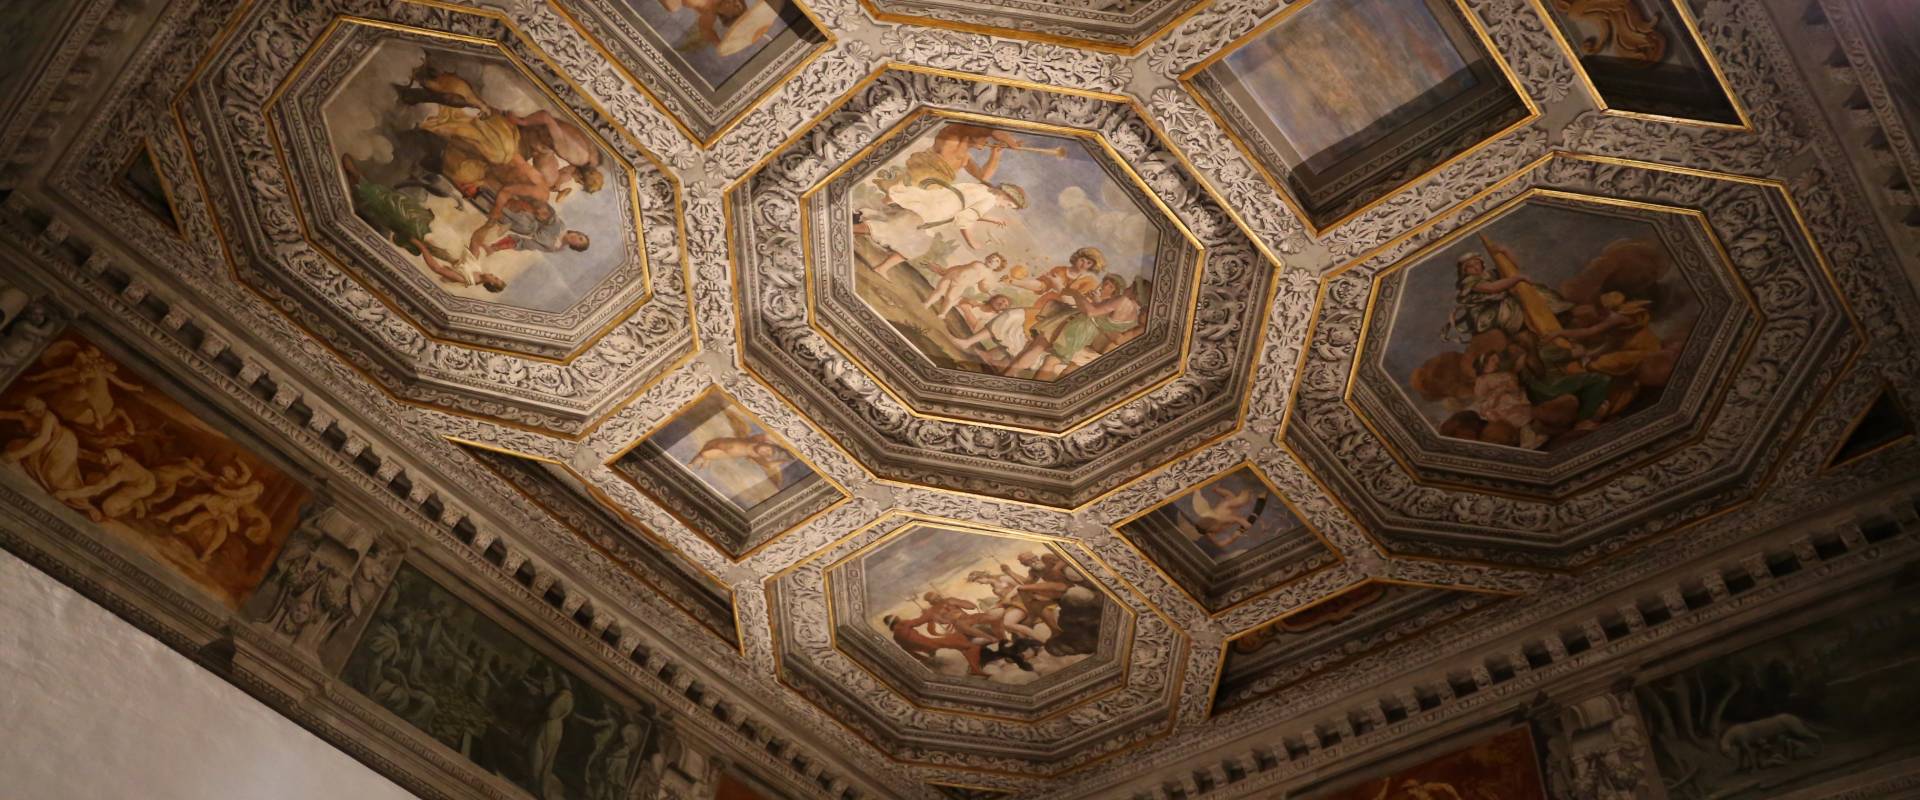 Sisto badalocchio e altri, soffitto della sala di giove, 1603, 01 photo by Sailko